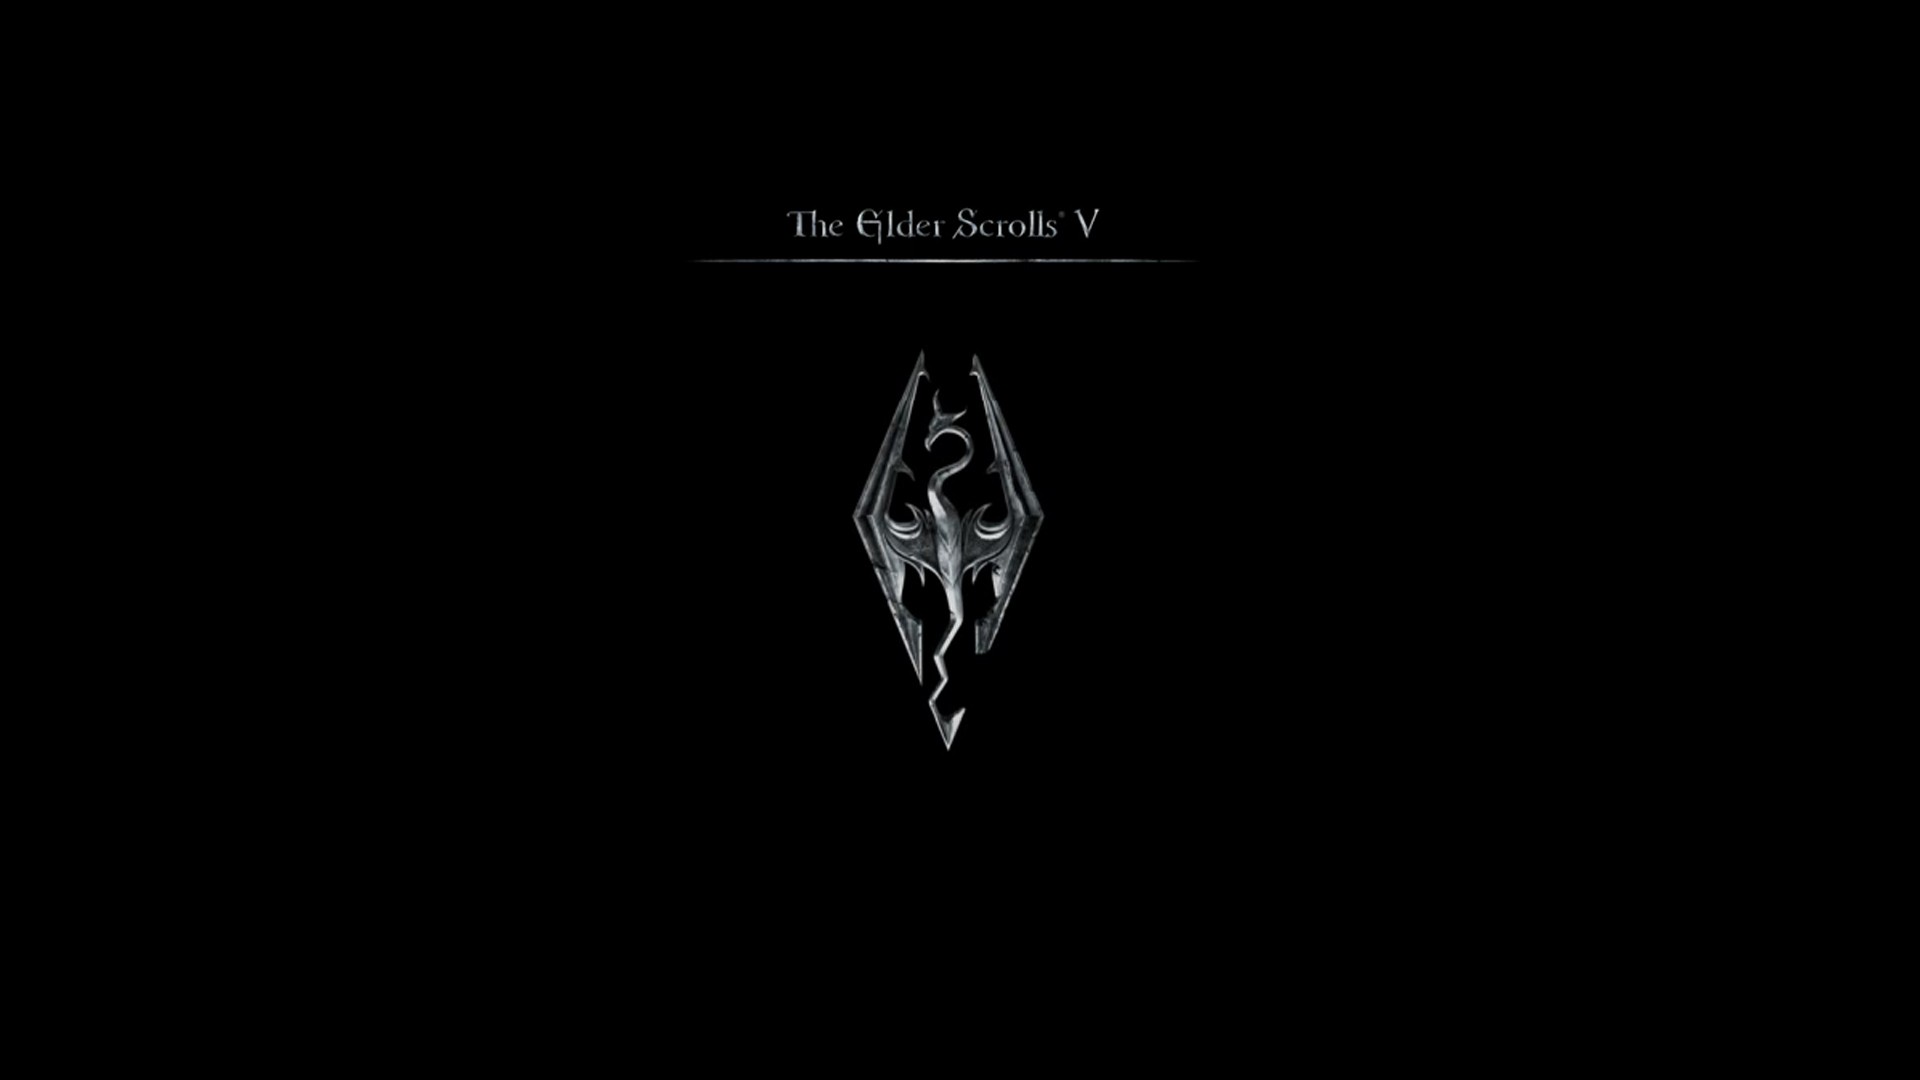 The Elder Scrolls V: Skyrim Wallpaper